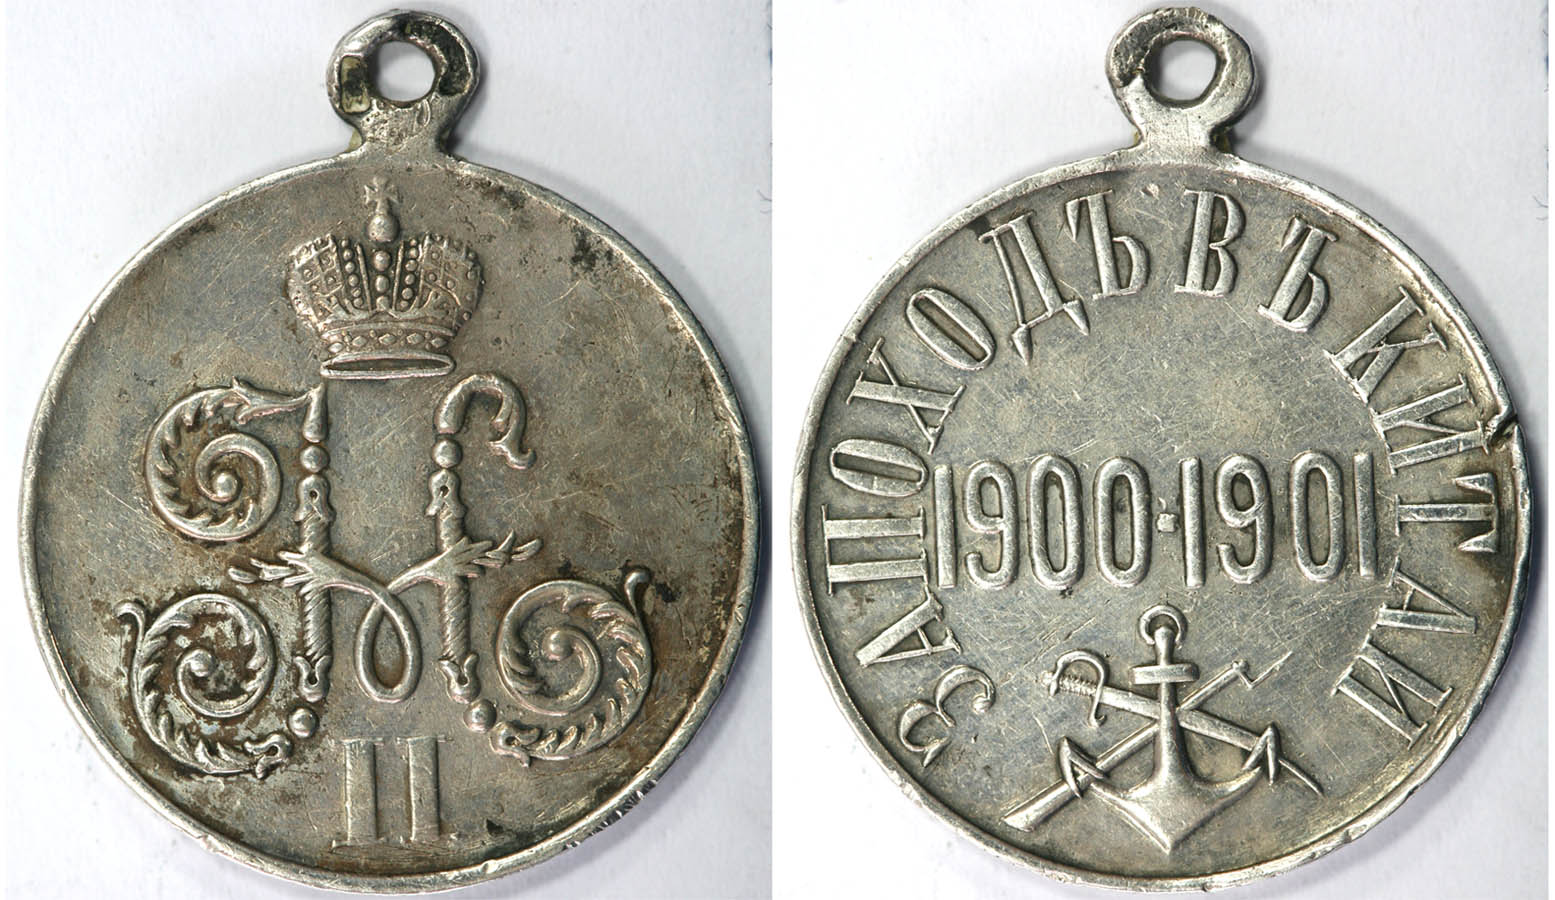      19001901   -1